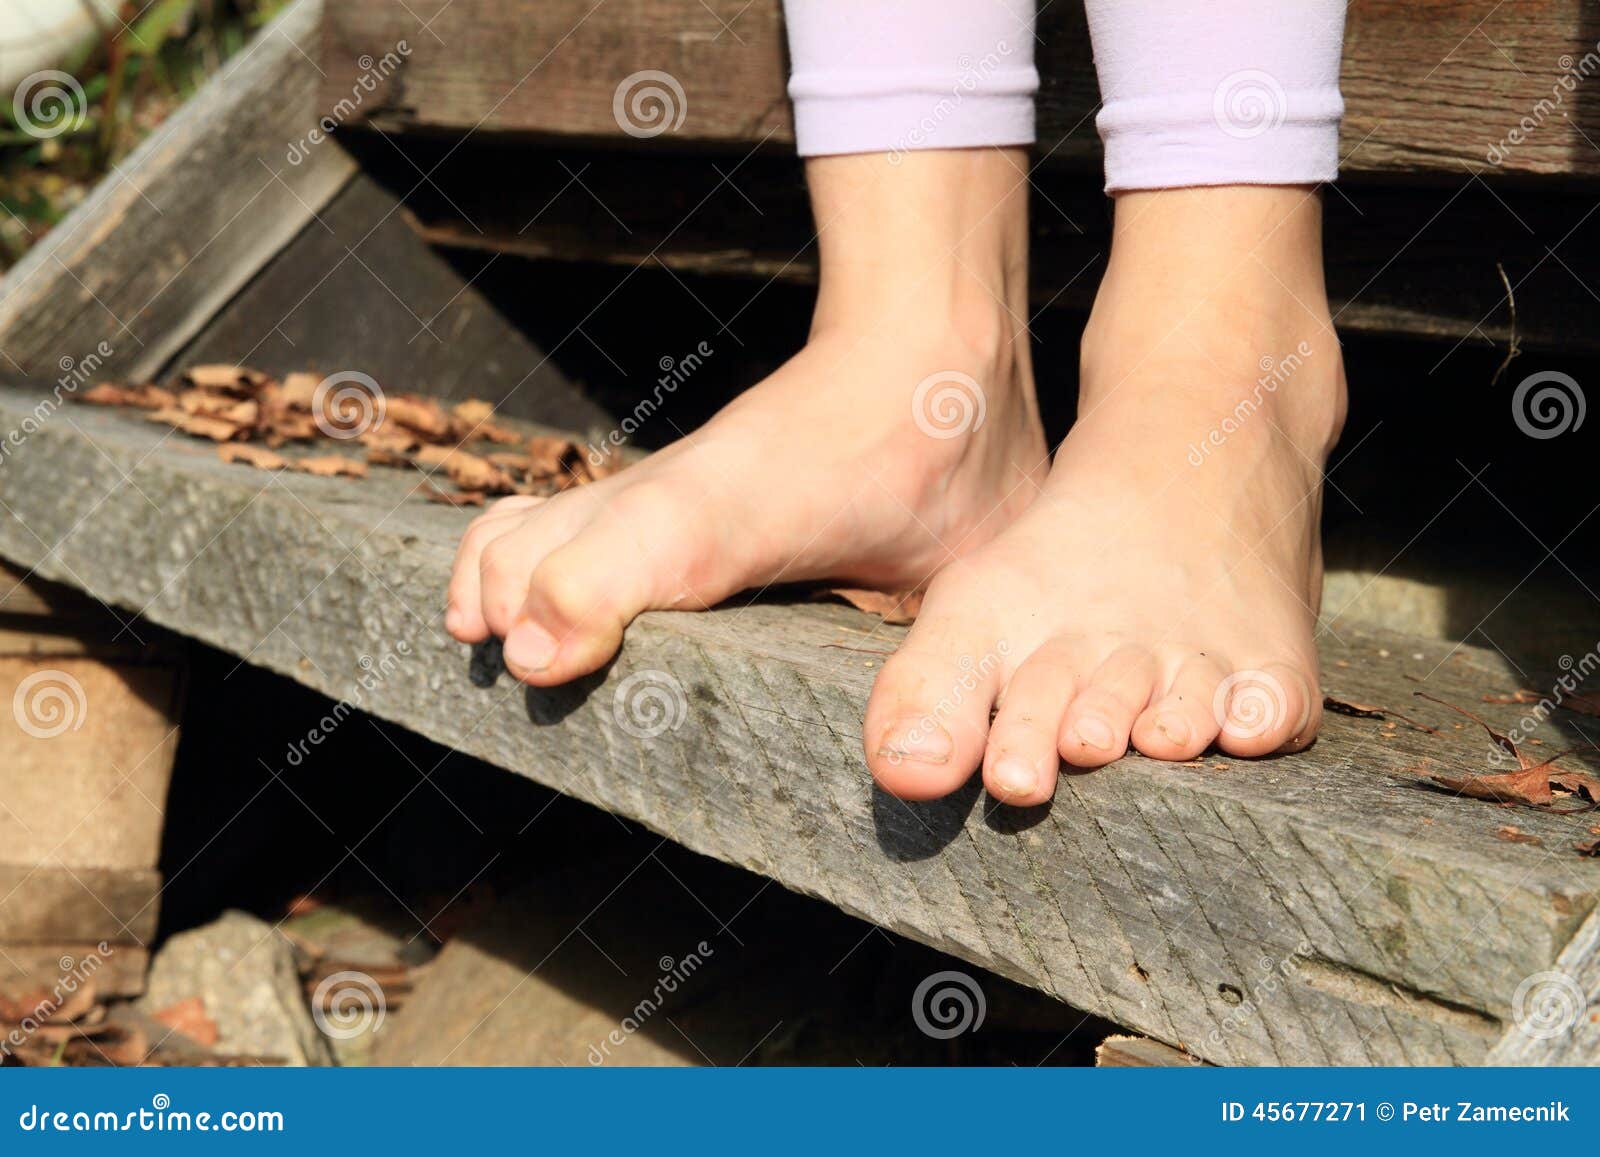 Was feet could not. Босые ноги лестница. Босые ноги девочек. Босые детские ступни. Босые ноги на дереве.